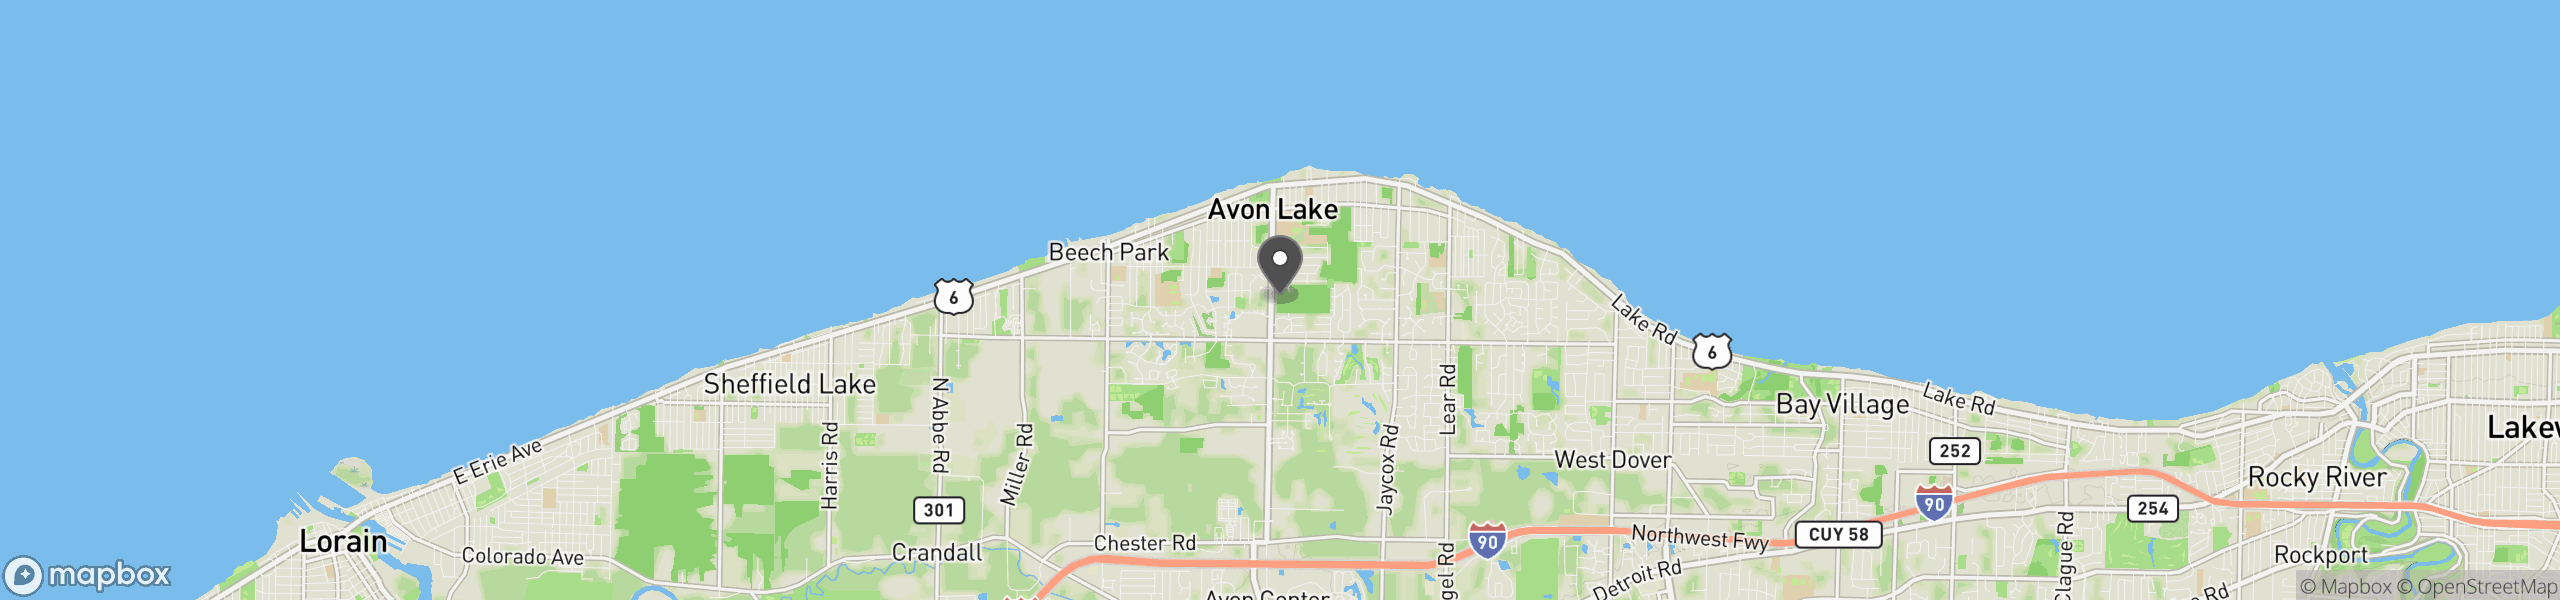 Avon Lake, OH